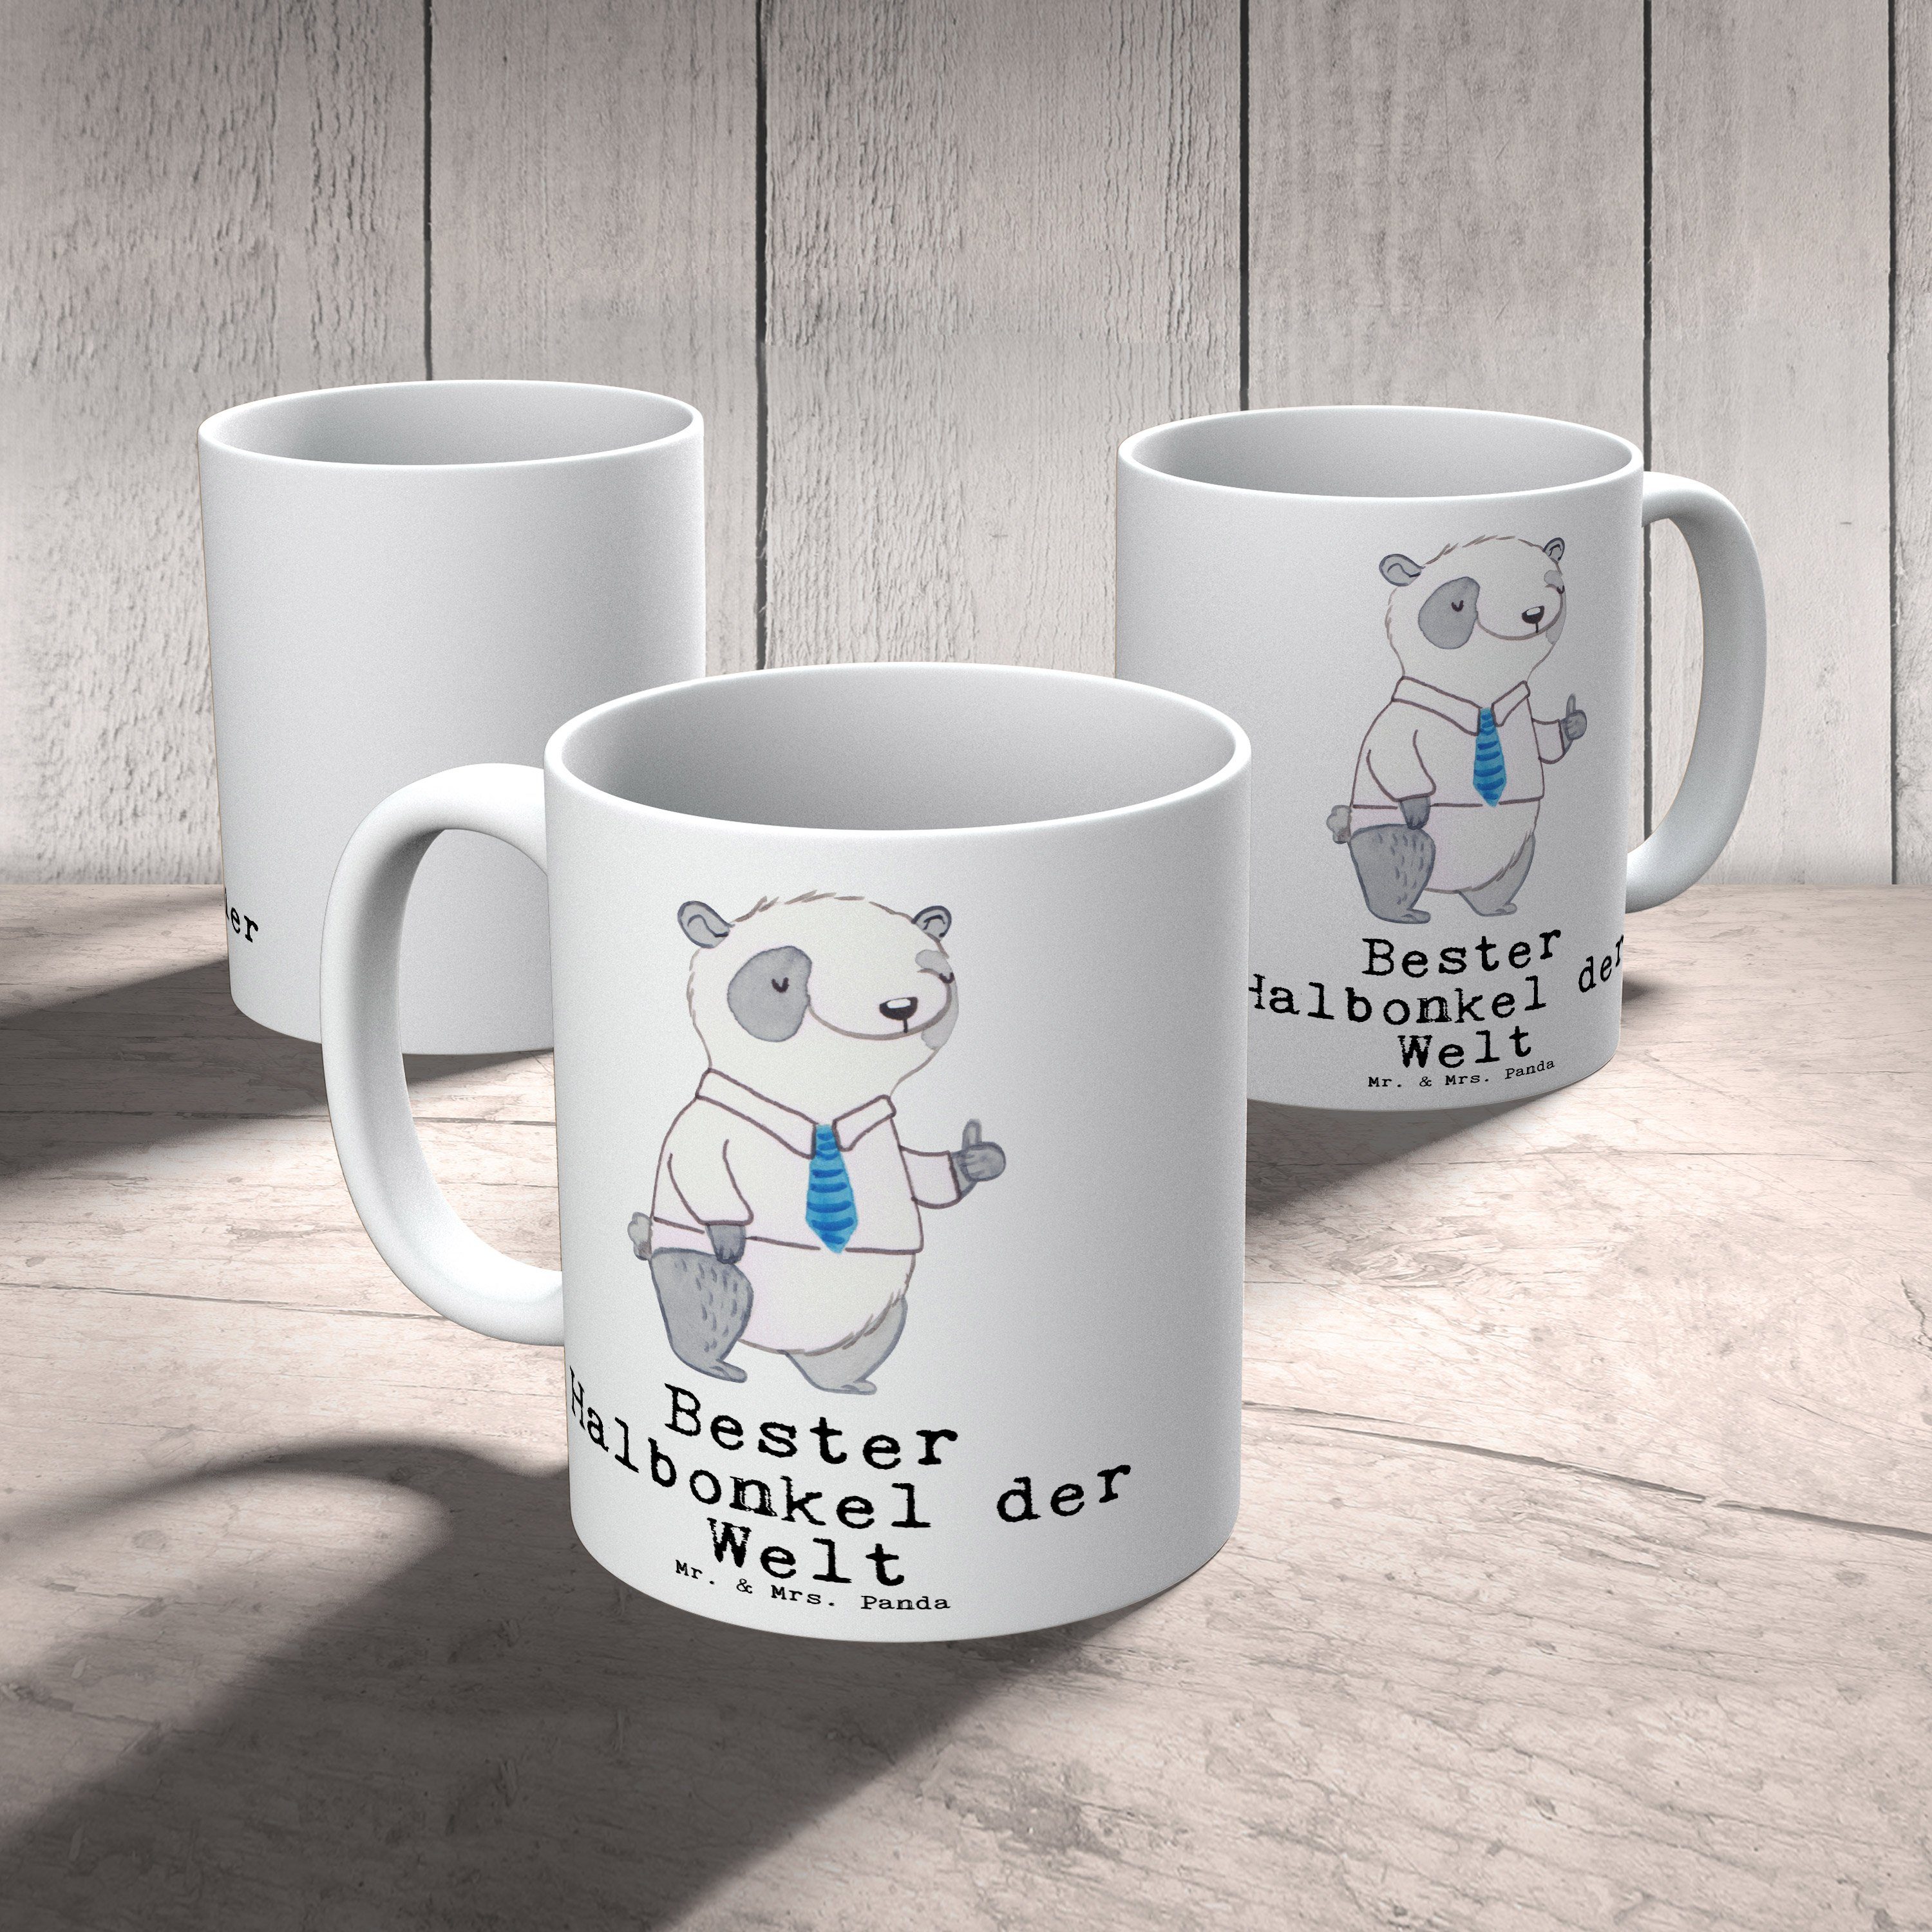 Mr. & Mrs. Panda Tasse Weiß der Welt Geschenk, Panda Halbonkel - machen, - Bester Stiefonkel, Kaffeetasse, Keramik Kaffeebecher, Freude Büro, Geburtstag, Schenken, Becher, Tee